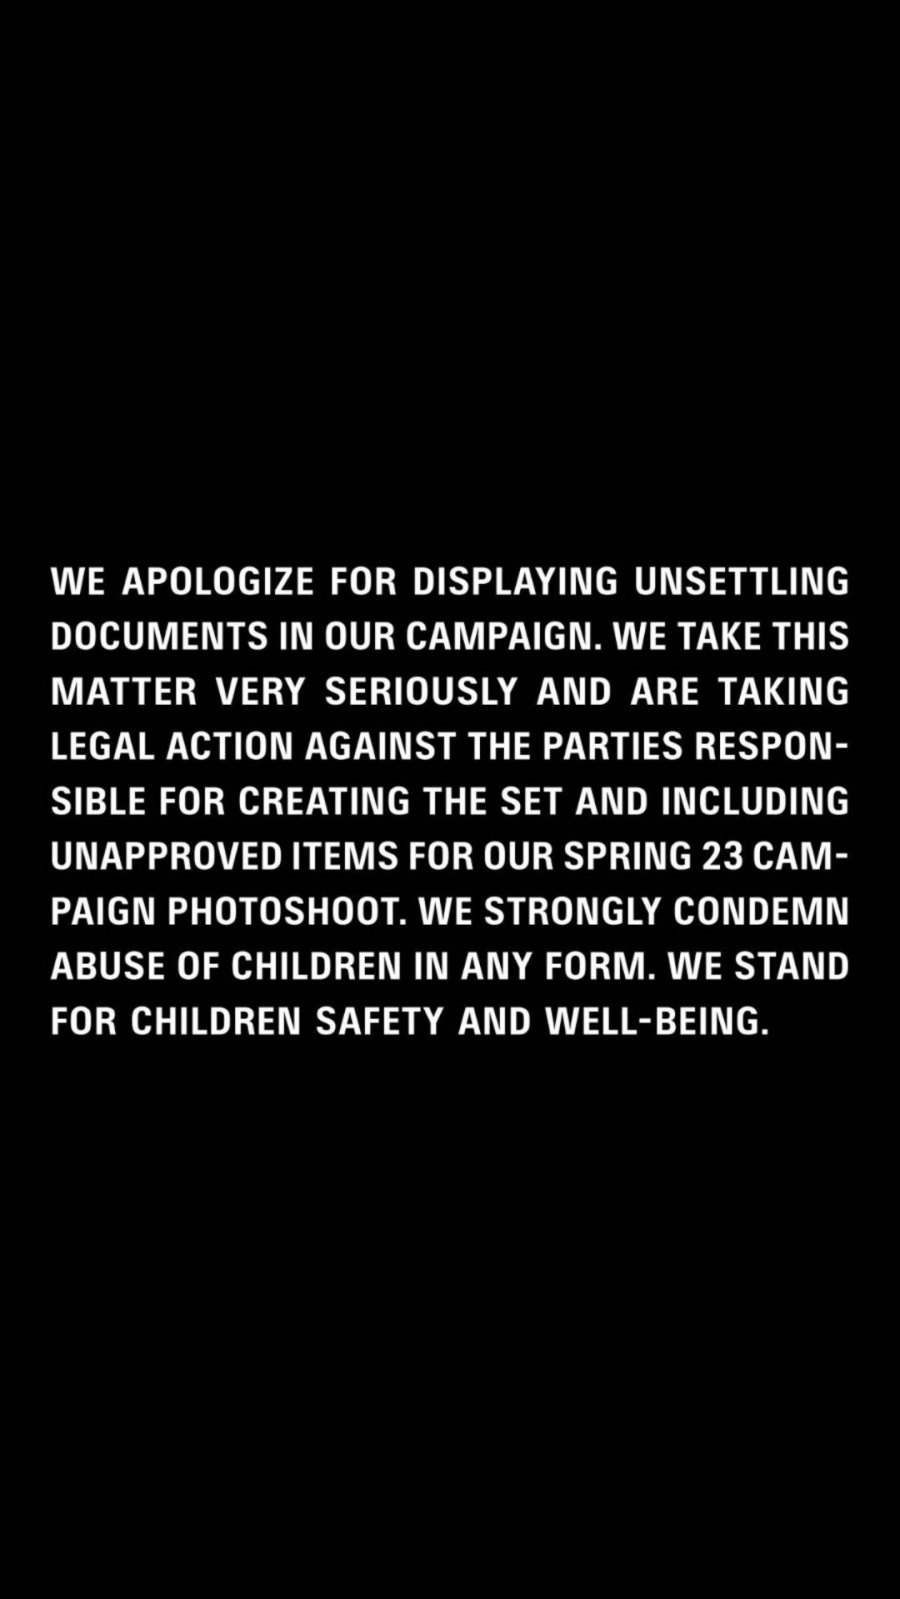 Ο Balenciaga αποσύρει την καμπάνια του με τα παιδιά και ζητά συγνώμη για όλους τους σωστούς λόγους